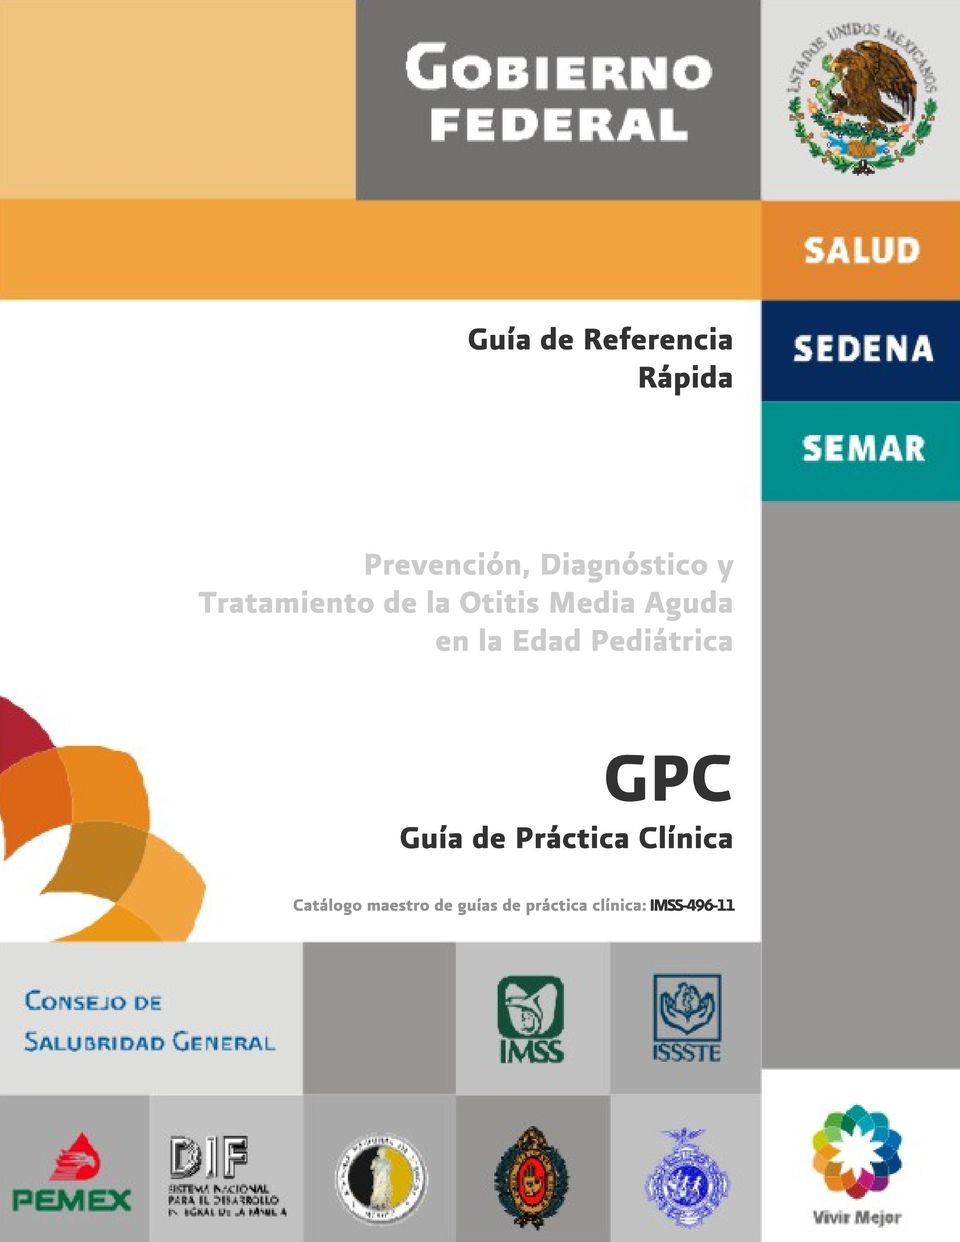 Pediátrica GPC Guía de Práctica Clínica Catálogo